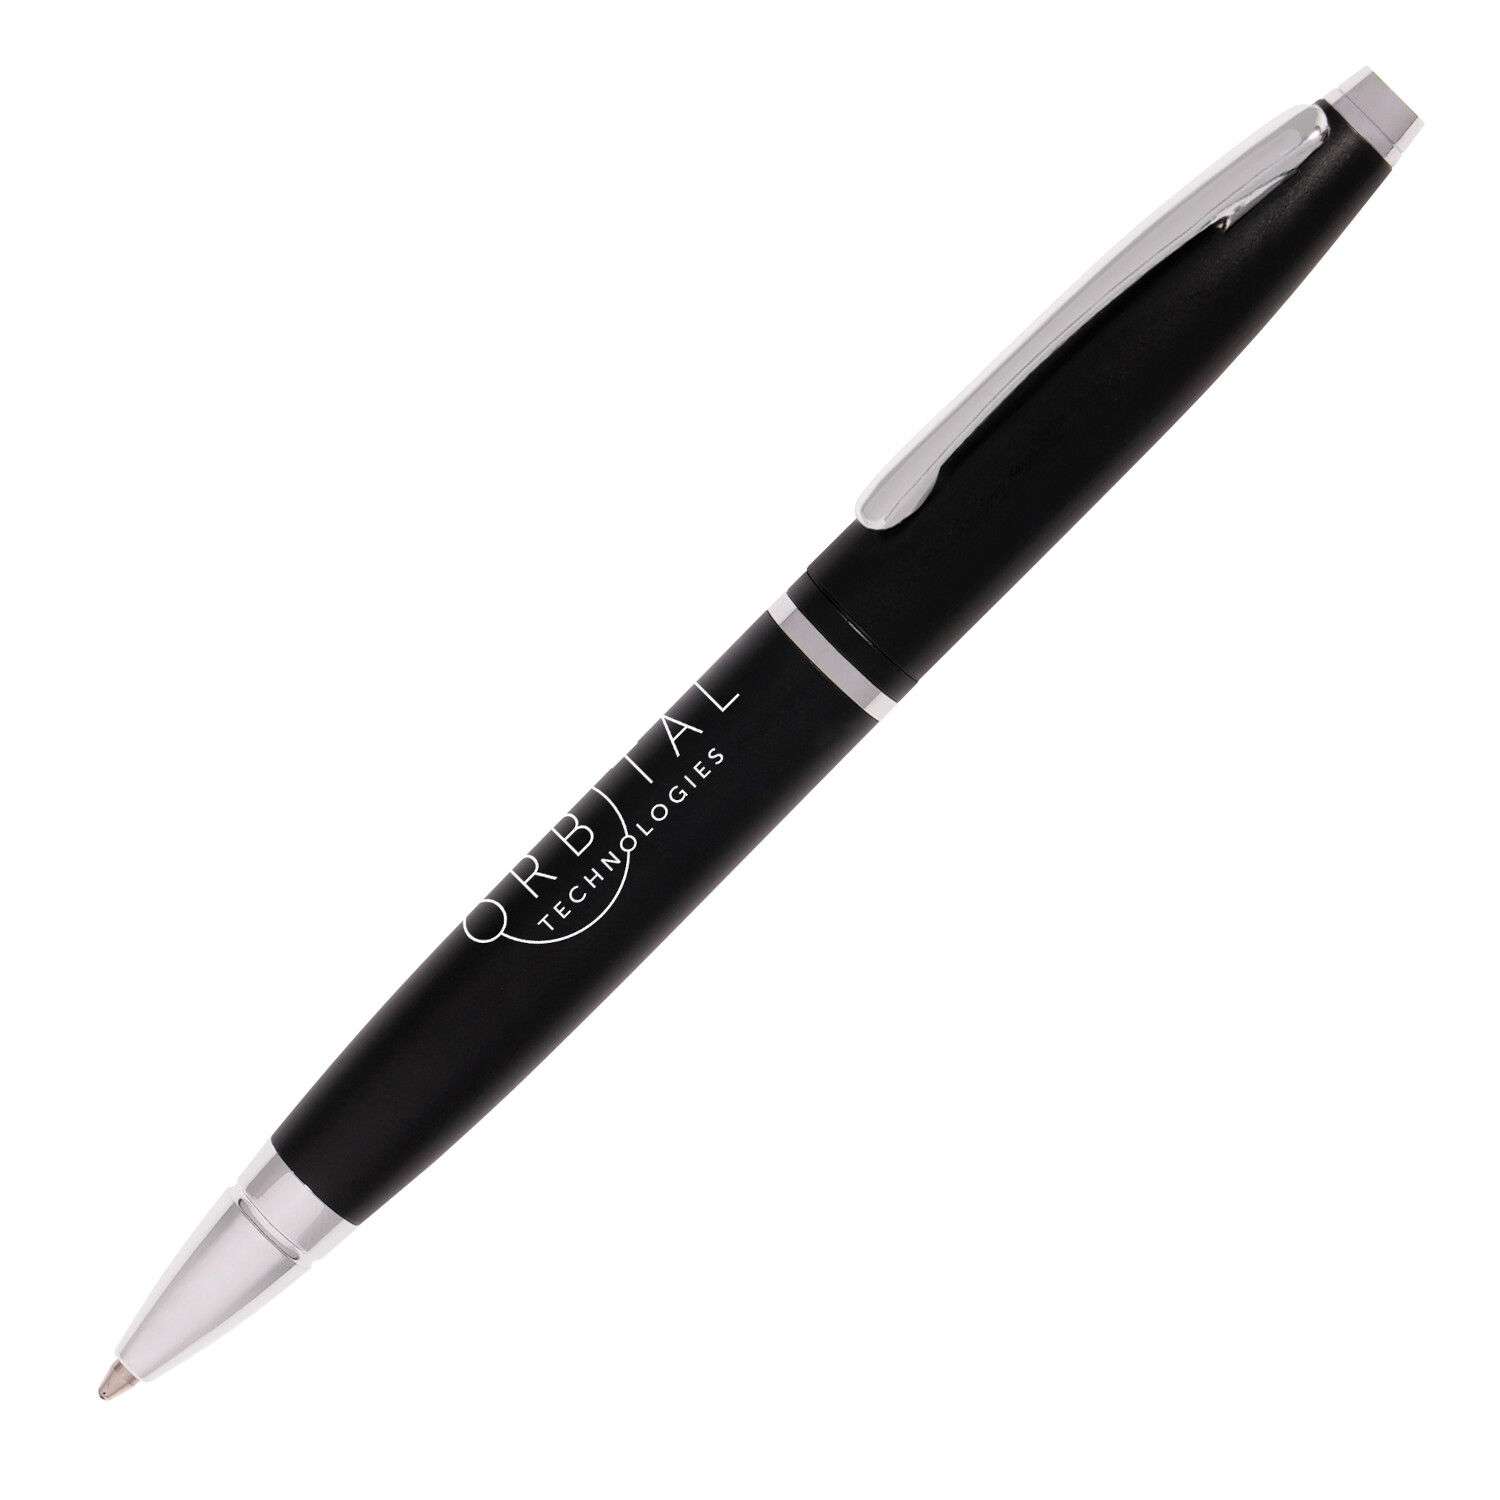 Dover Ball Pen (black with sample branding)